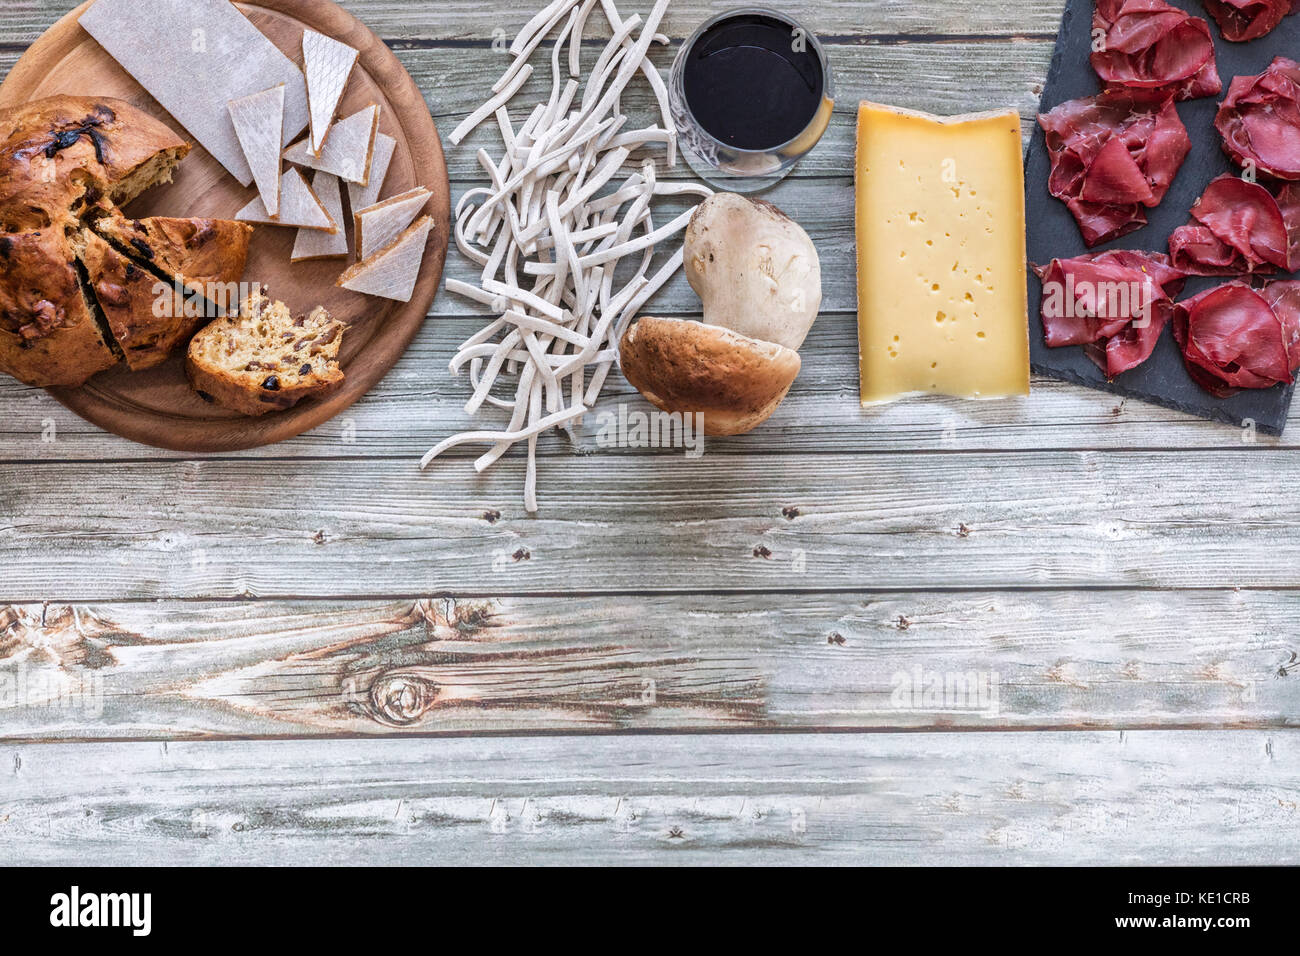 La bresaola igp accompagnati con i pizzoccheri, formaggio, funghi e besciola, cibo locale della valtellina, lombardia, italia Foto Stock